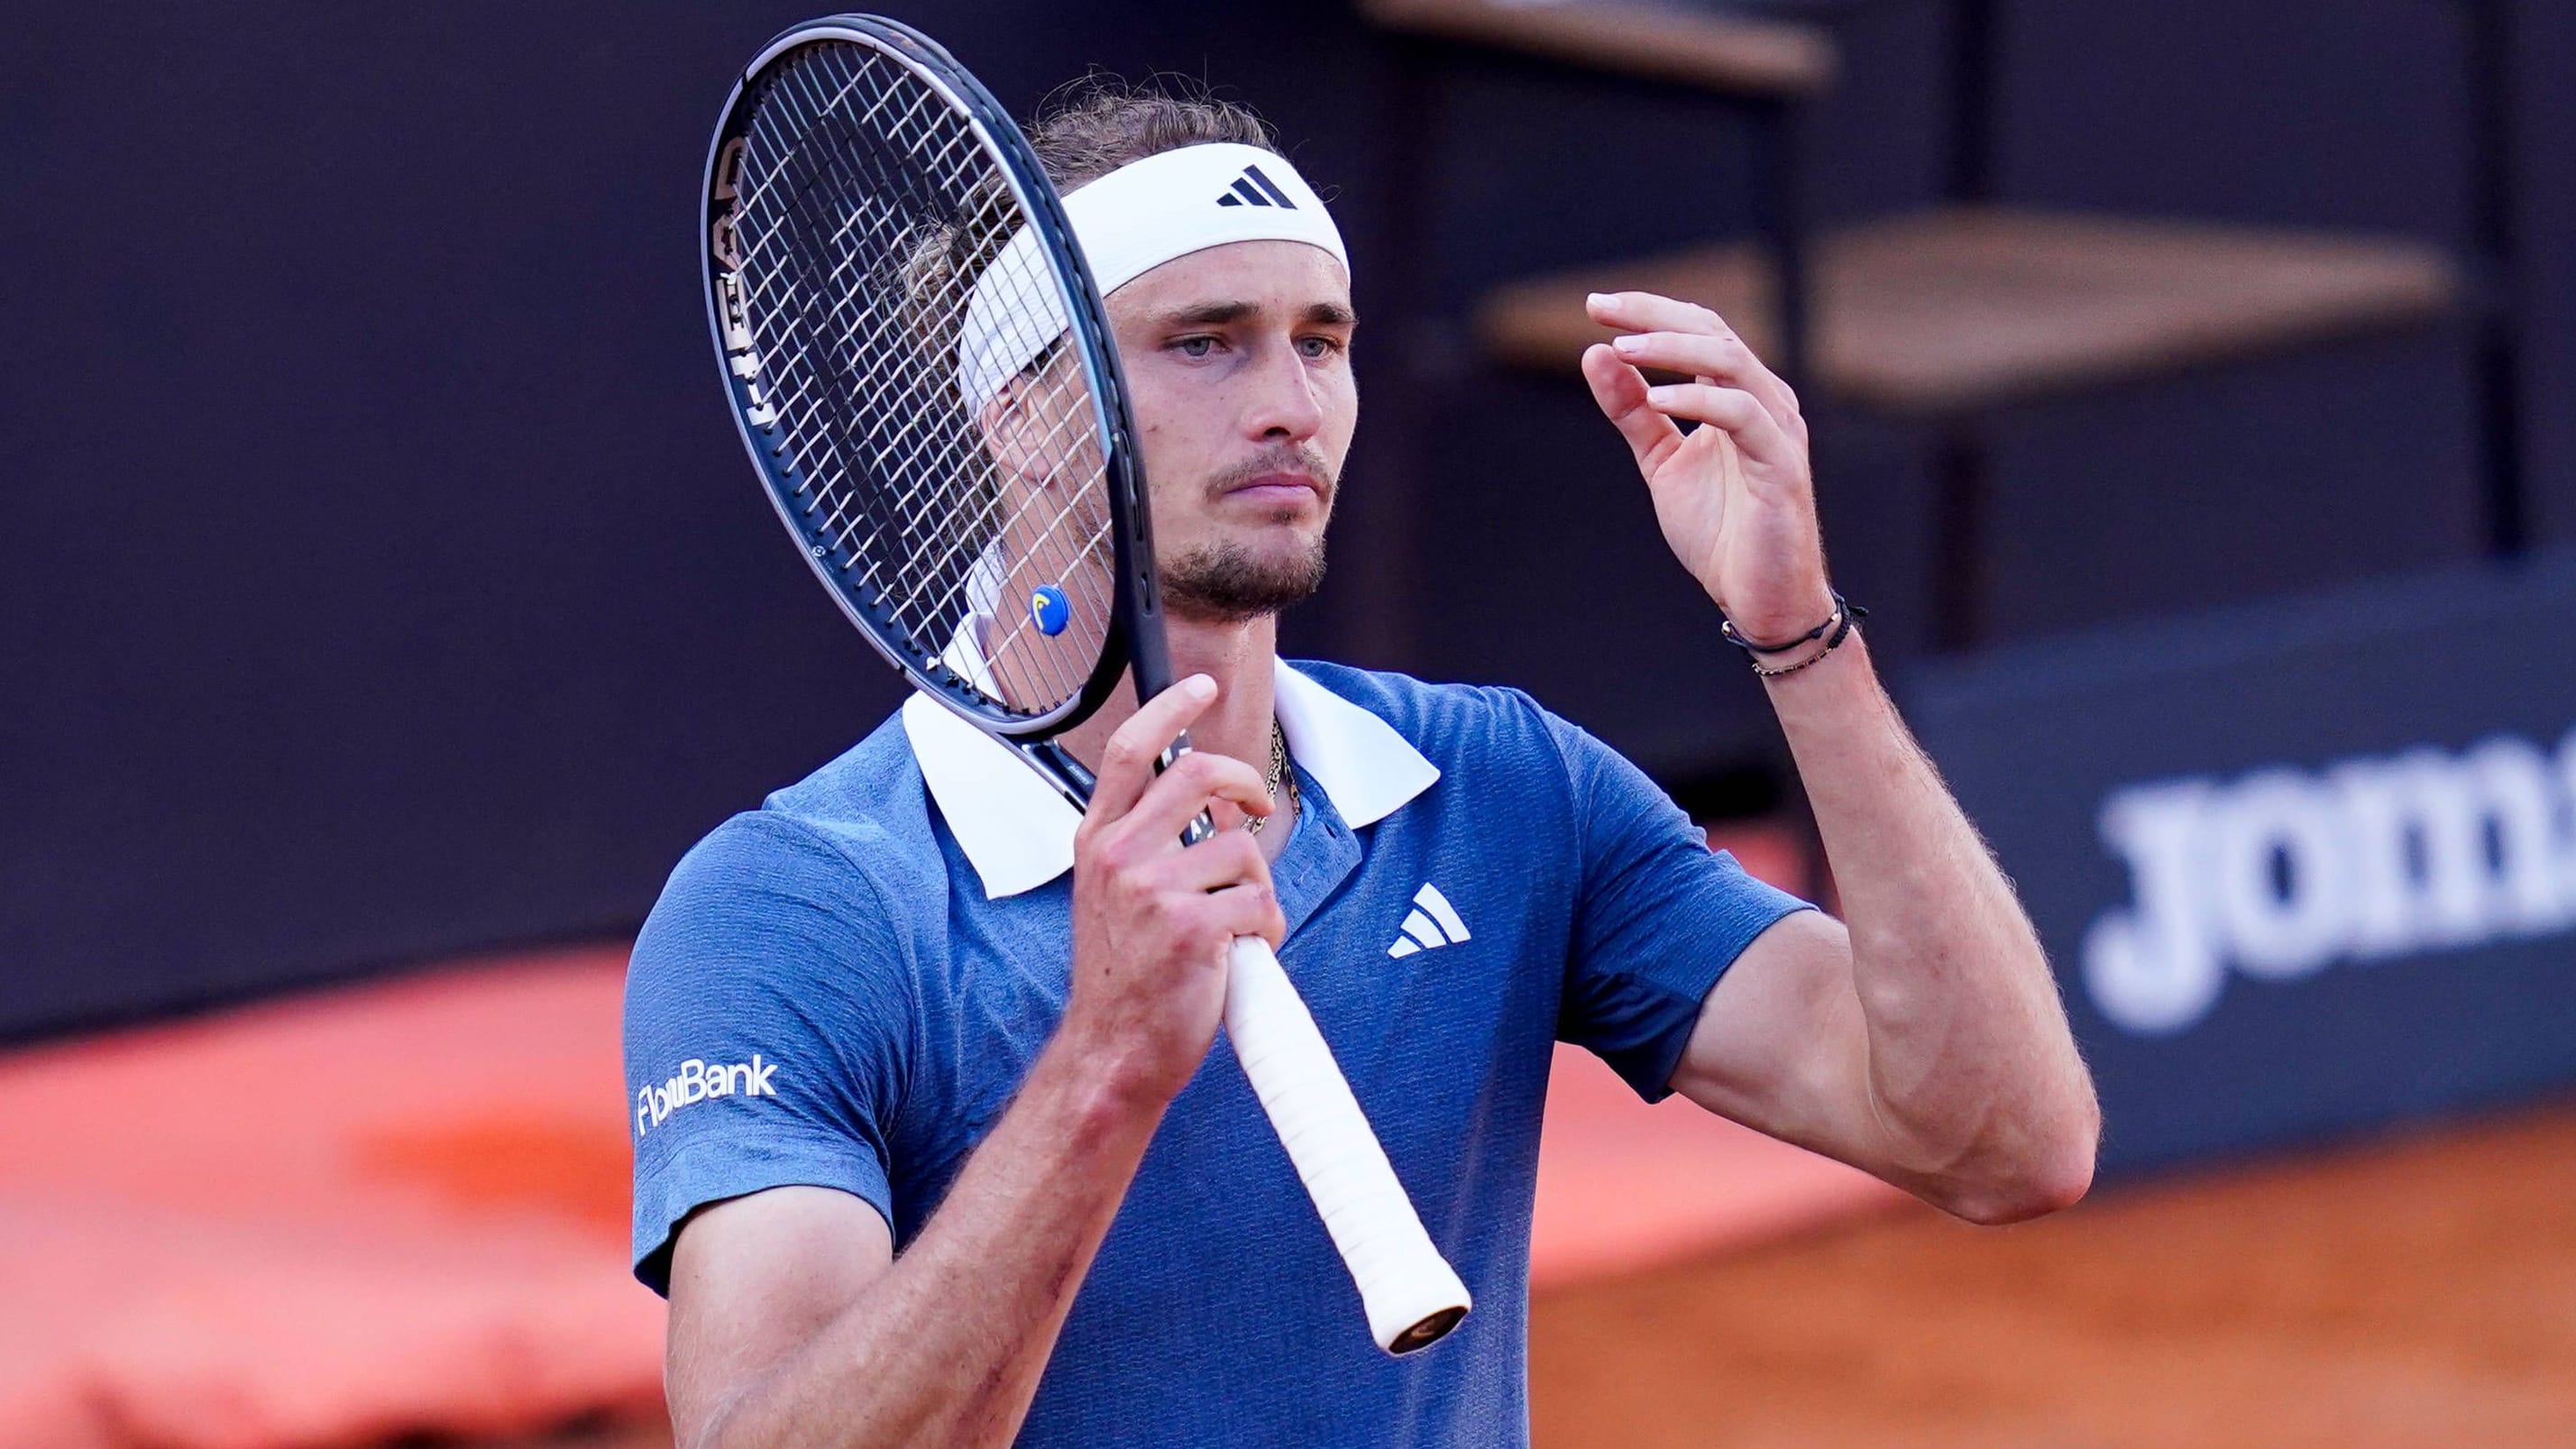 French Open: Tennis-Star Alexander Zverev trifft zum Start auf Rafael Nadal